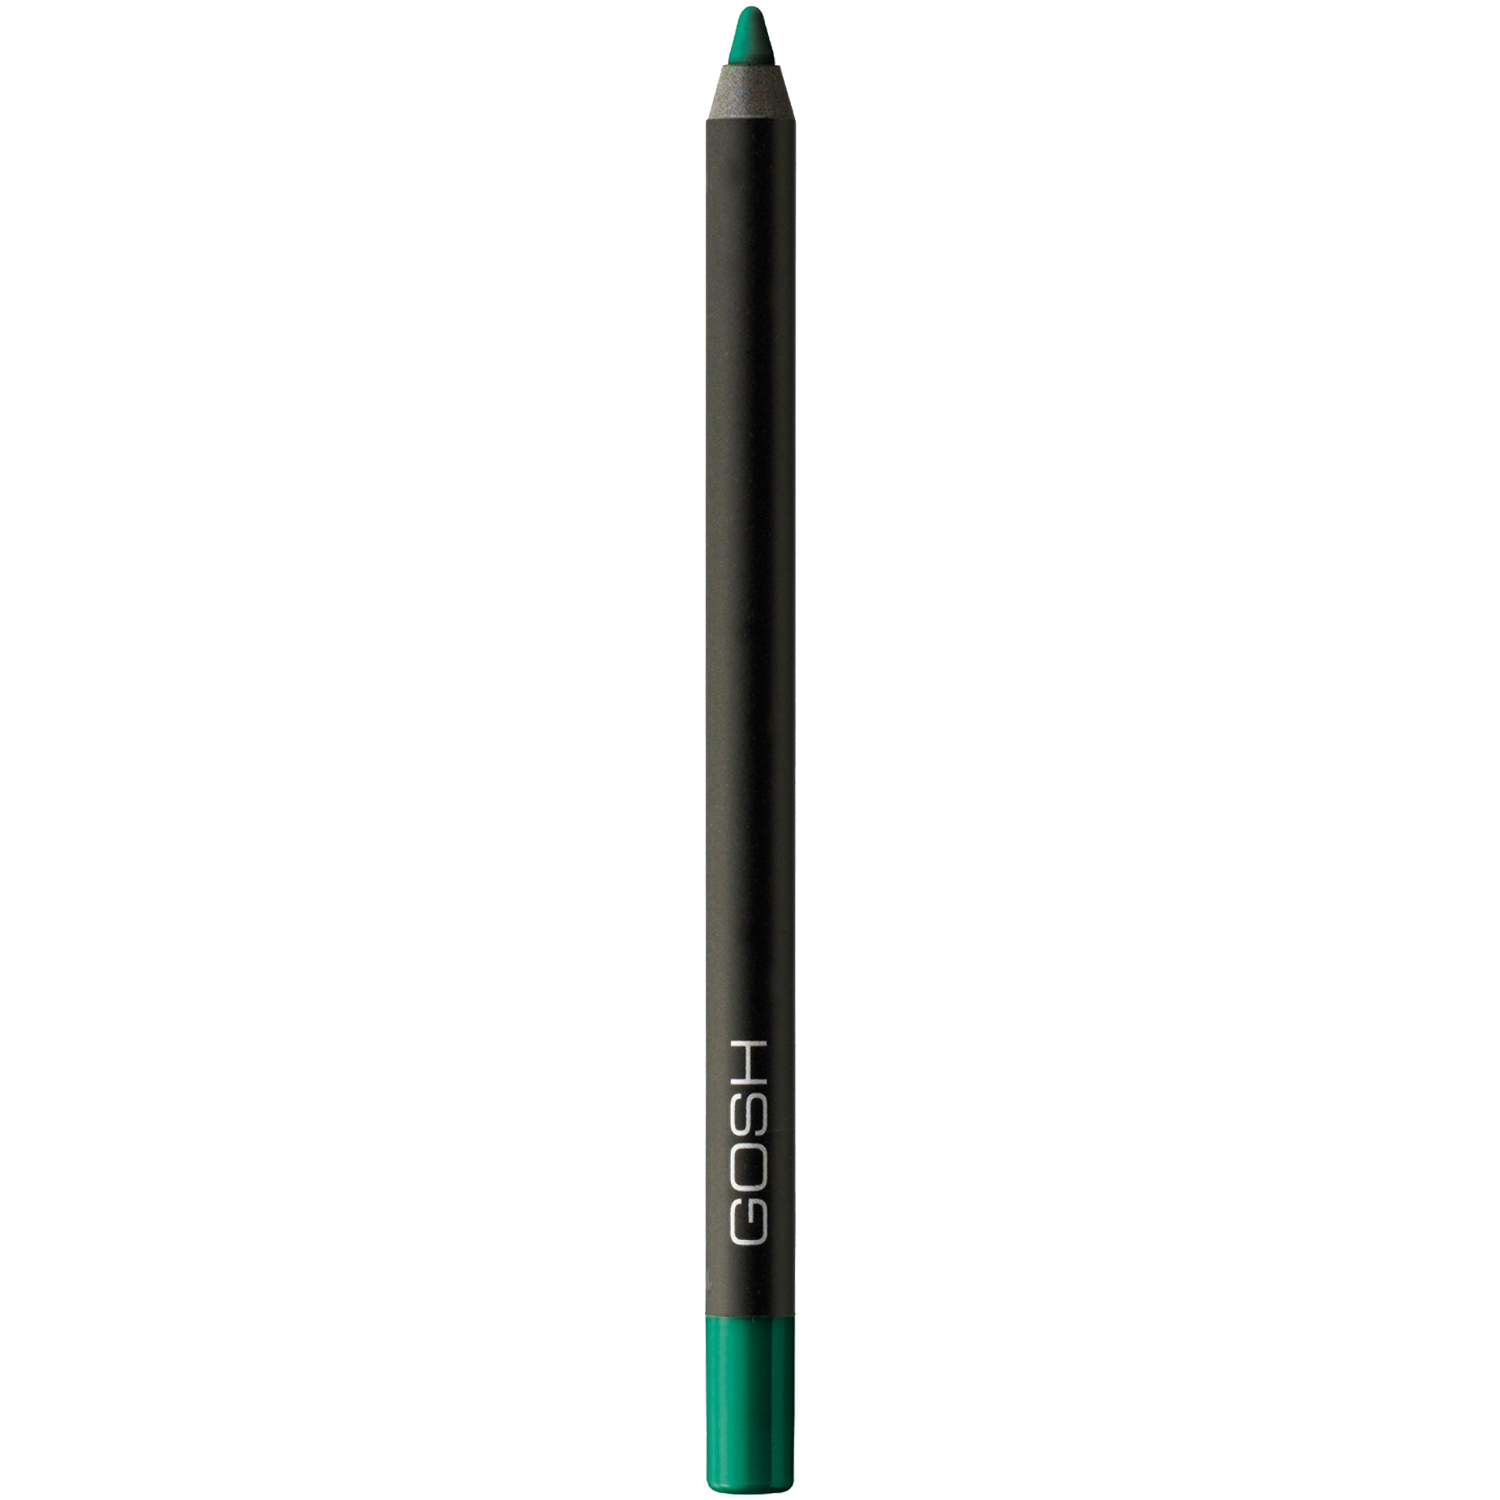 Водостойкий карандаш для глаз древесно-зеленый 026 Gosh Velvet Touch Woody Green, 1,2 гр